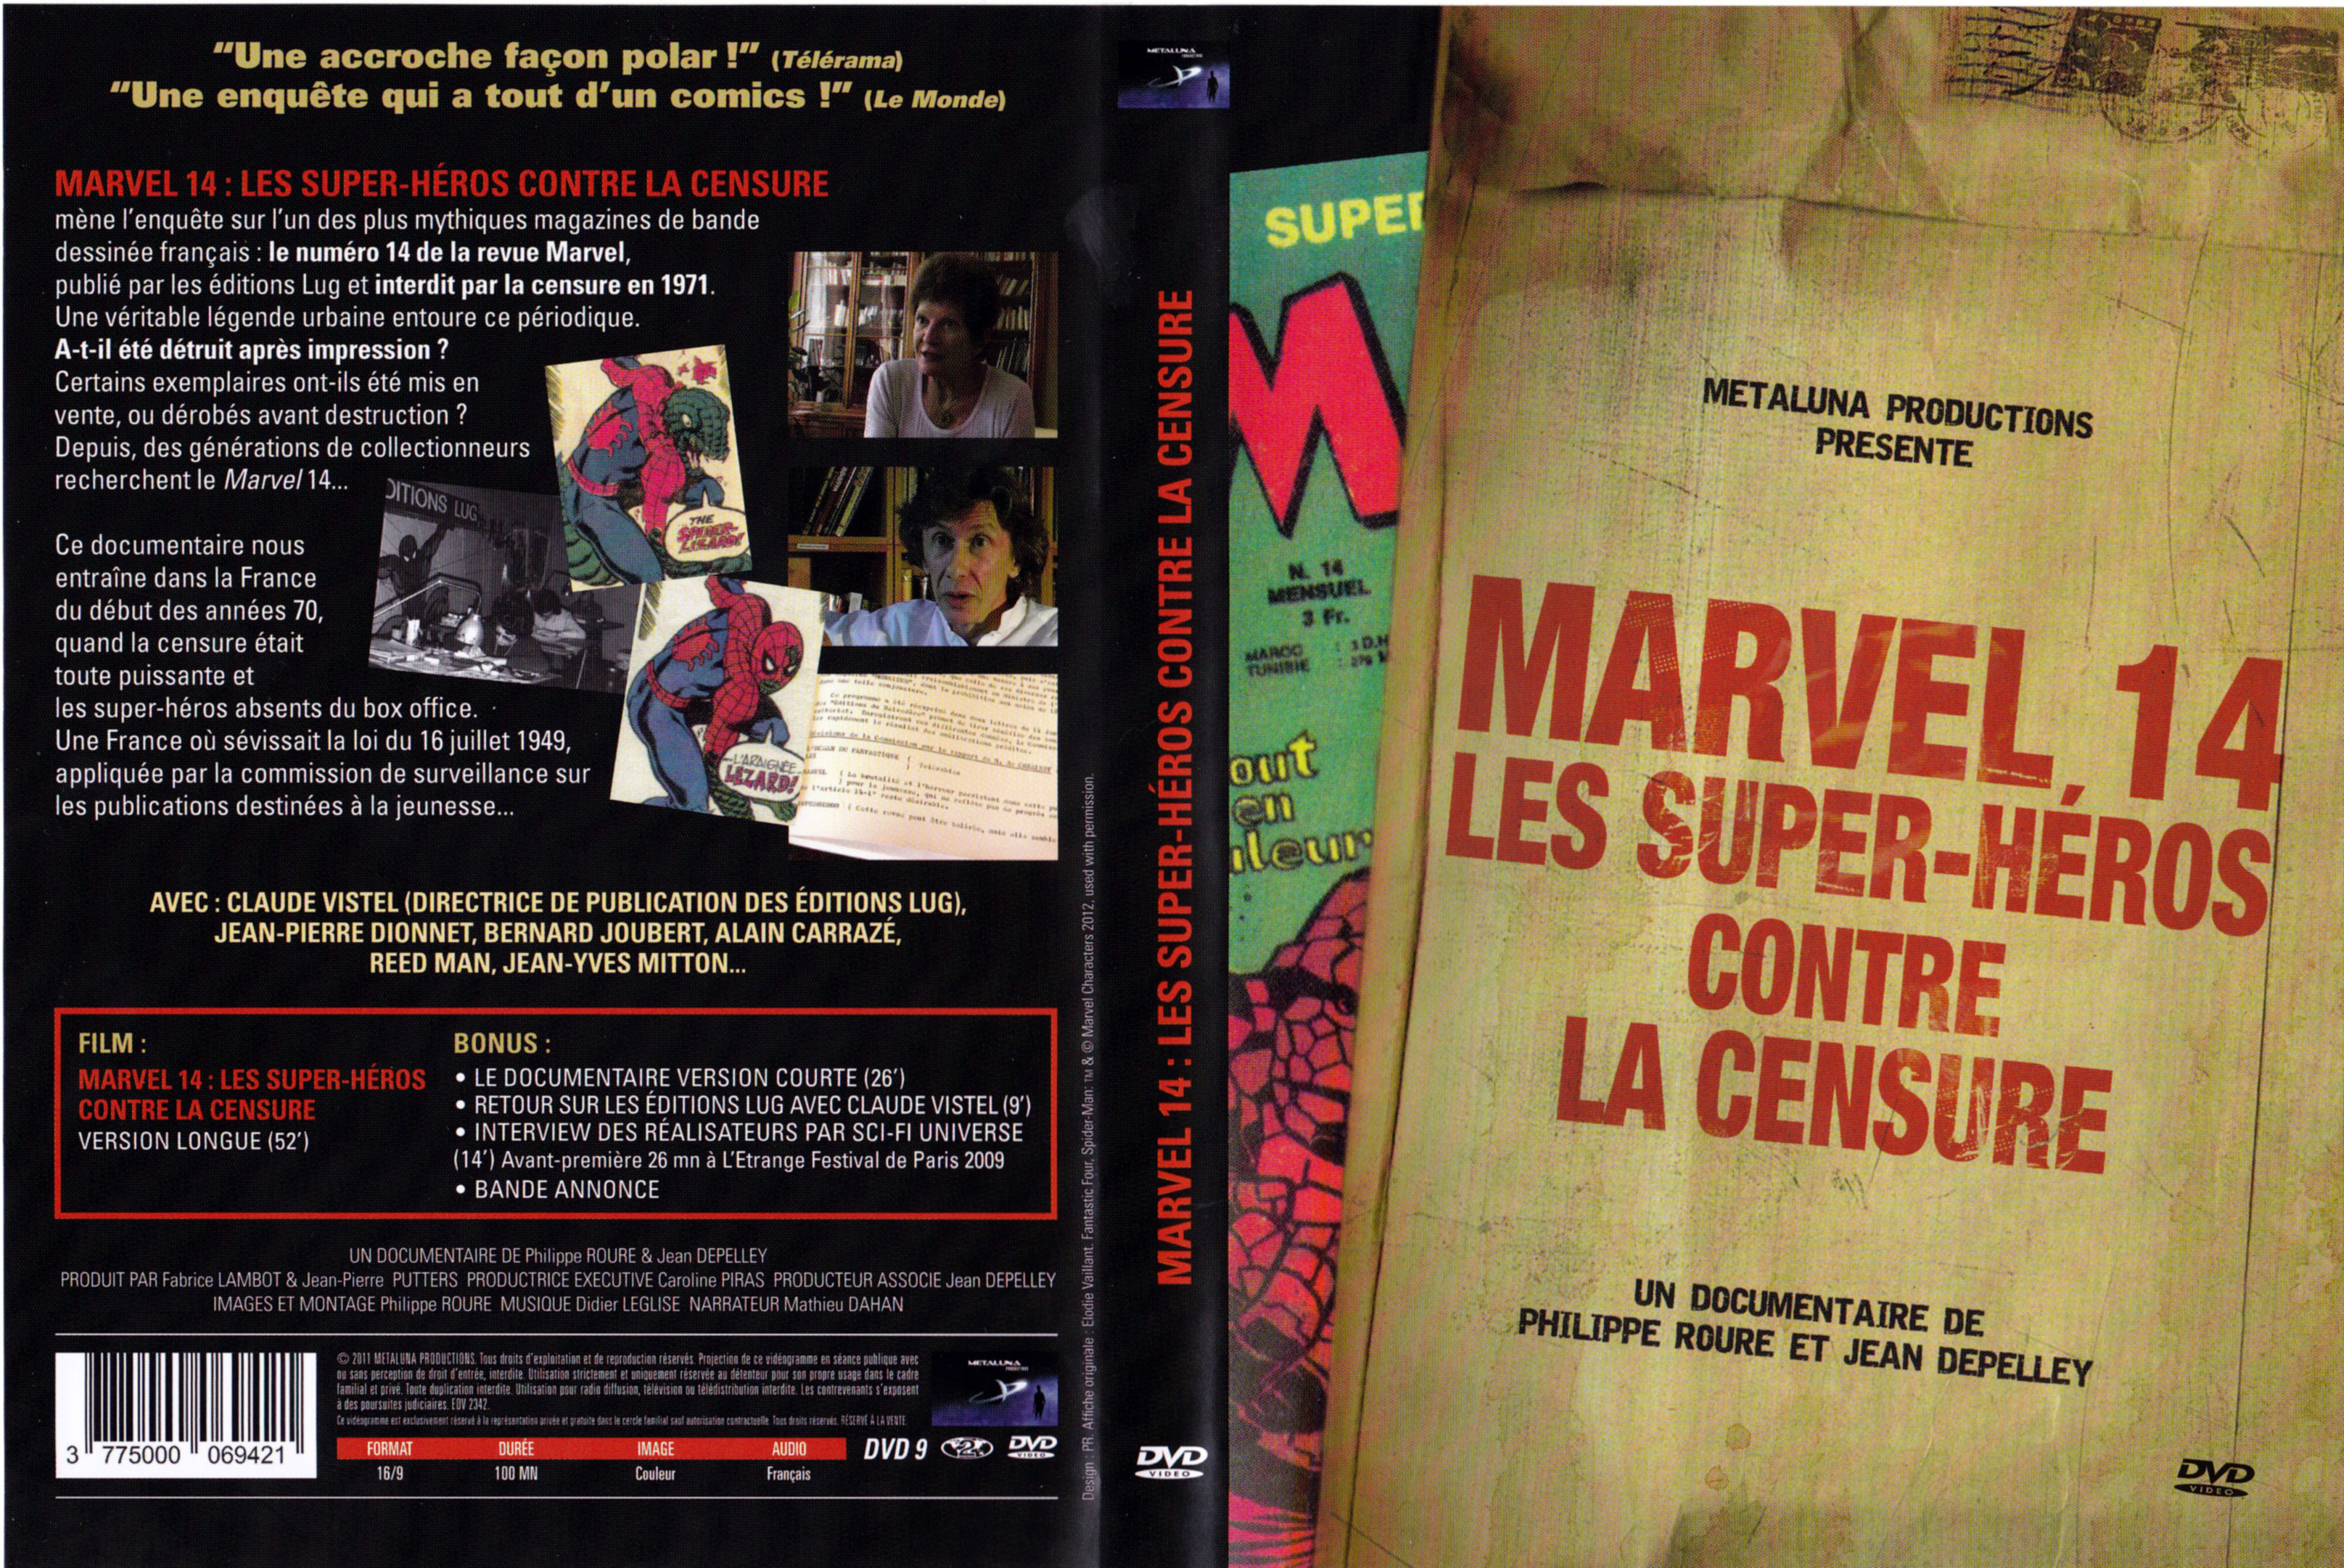 Jaquette DVD Marvel 14 Les Super Hros Contre la Censure